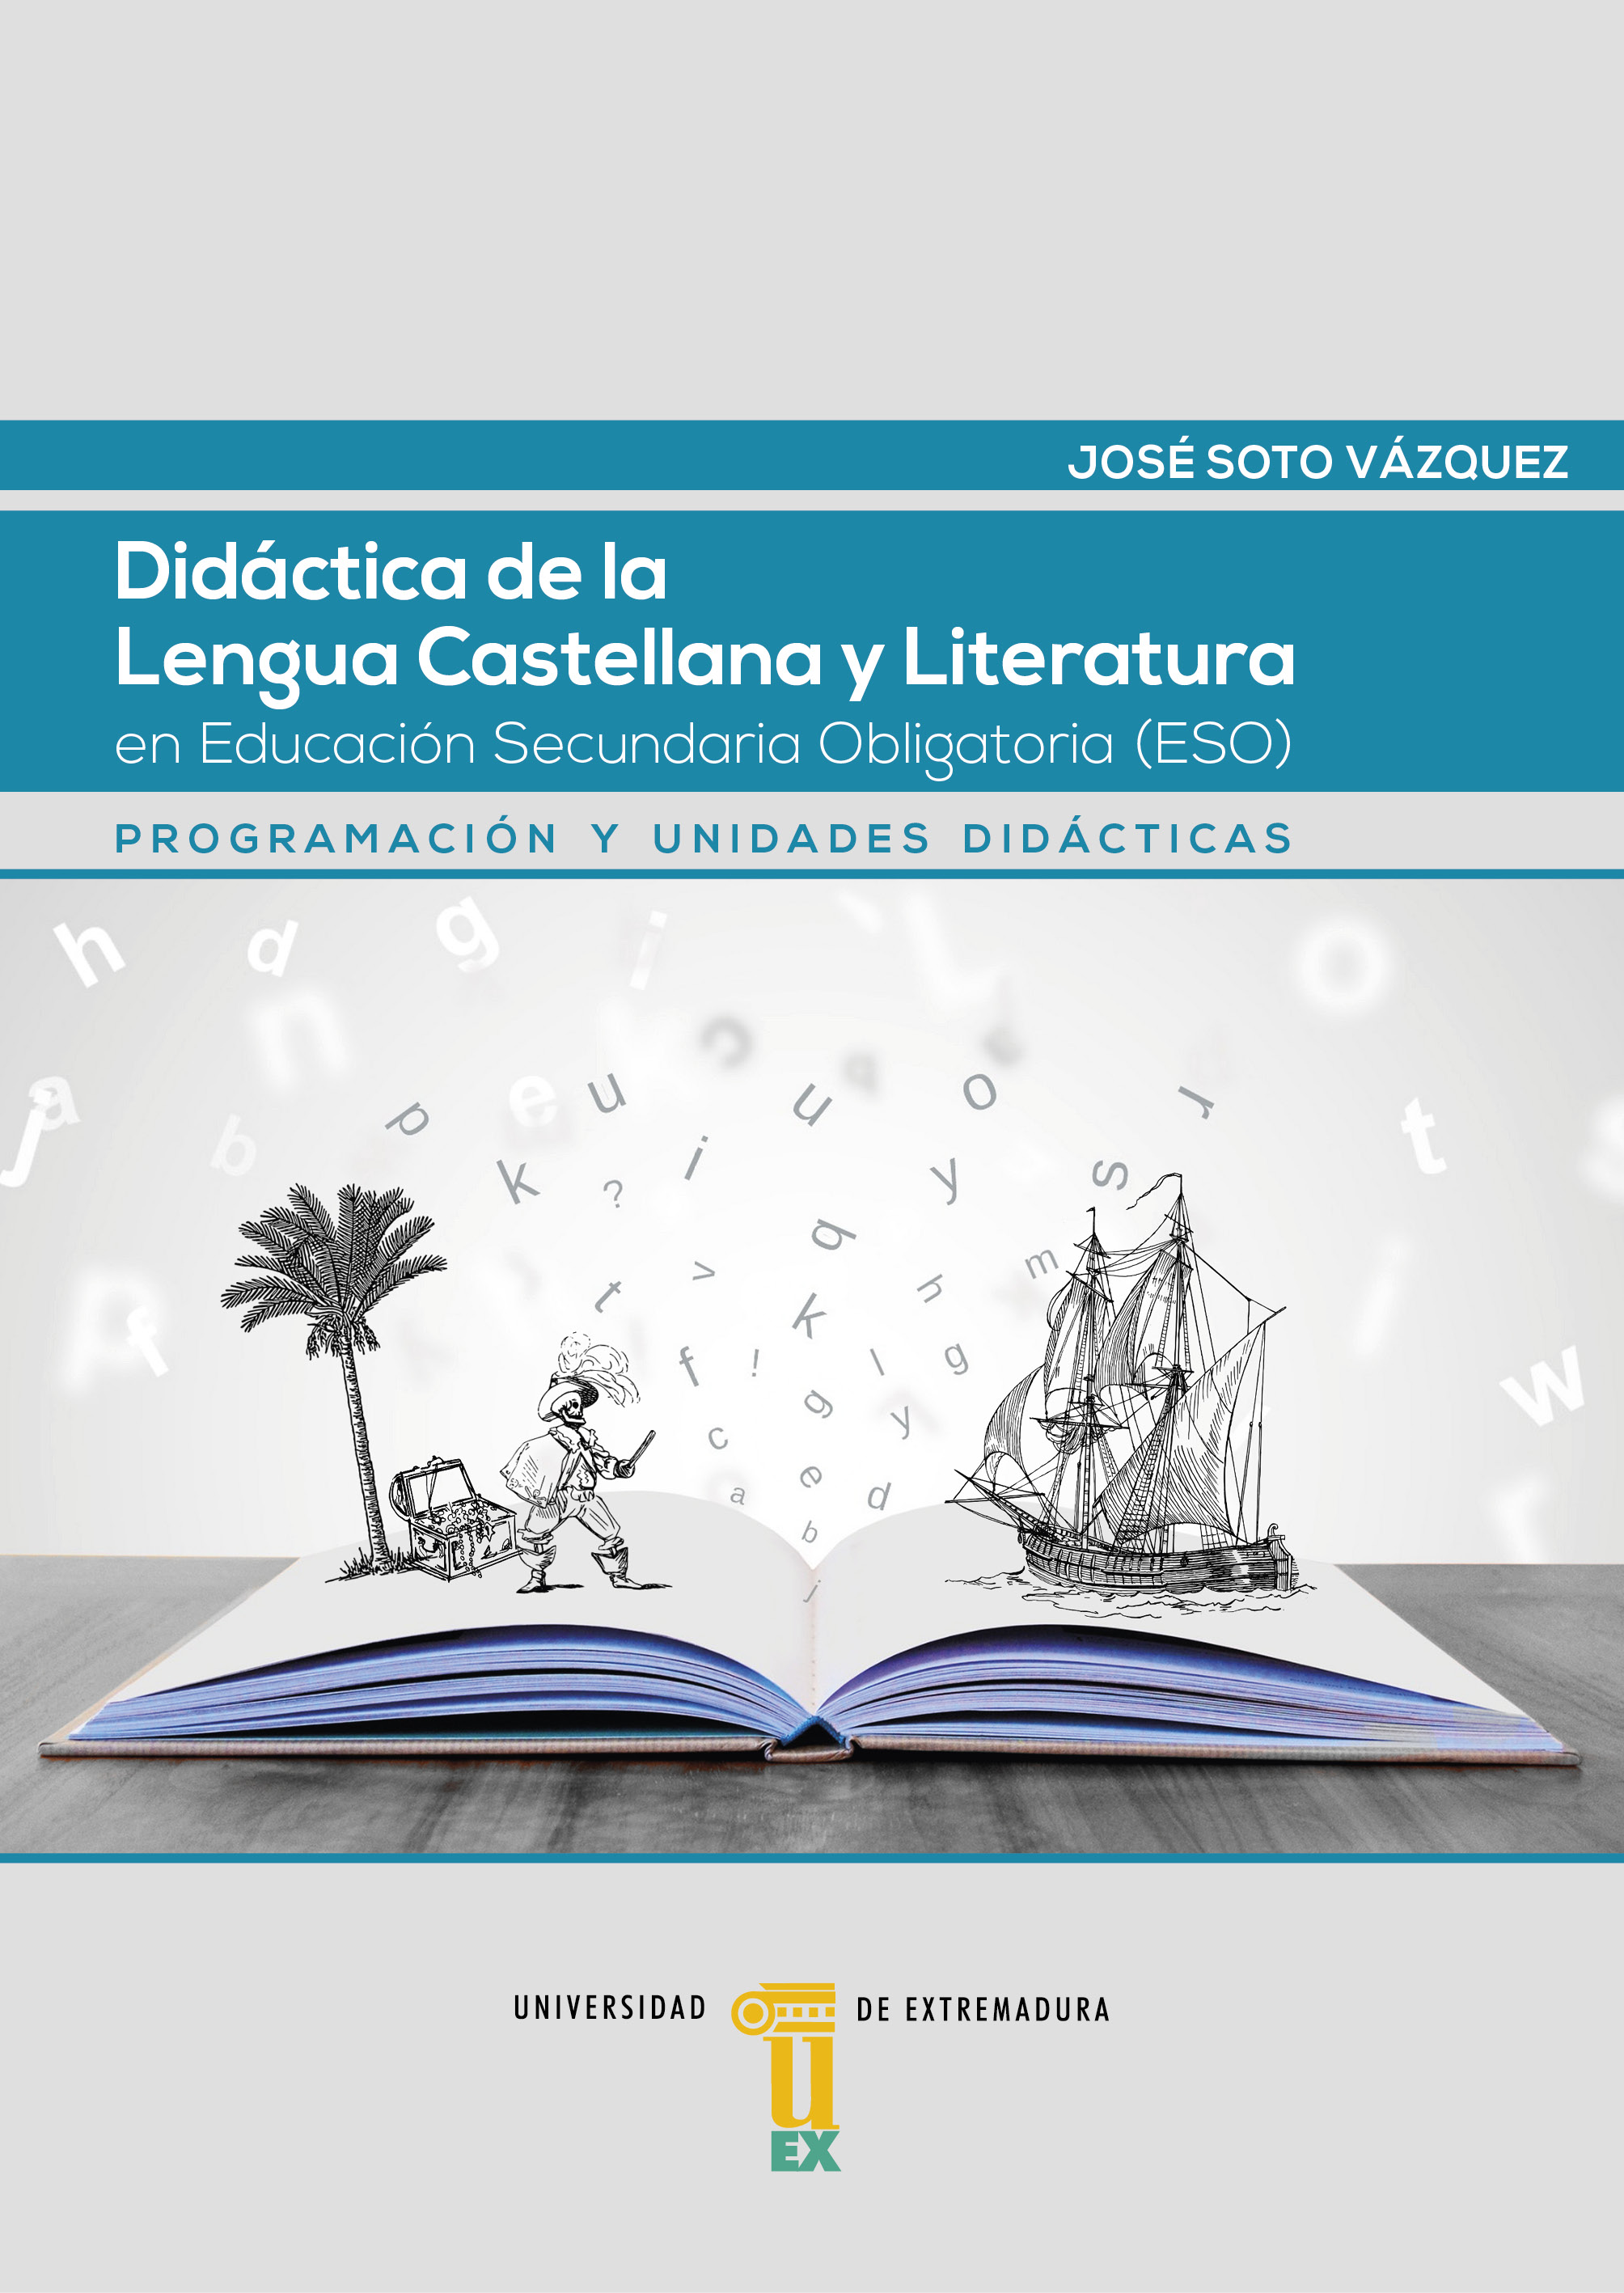 Imagen de portada del libro Didáctica de la Lengua Castellana y Literatura en Educación Secundaria Obligatoria (ESO)